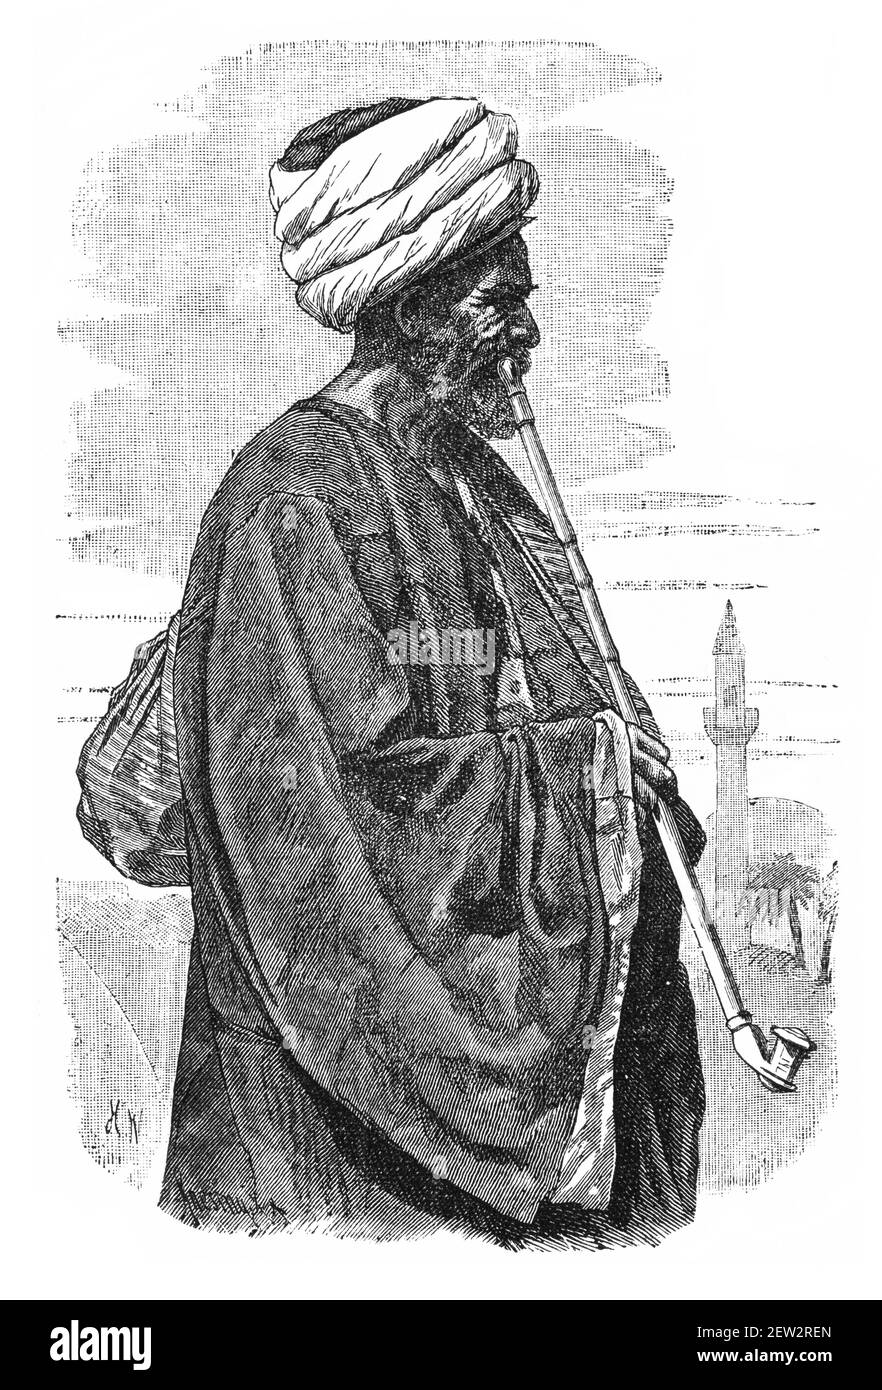 Vecchio marinaio egiziano. Cultura e storia del Nord Africa. Immagine in bianco e nero d'epoca. 19 ° secolo. Foto Stock